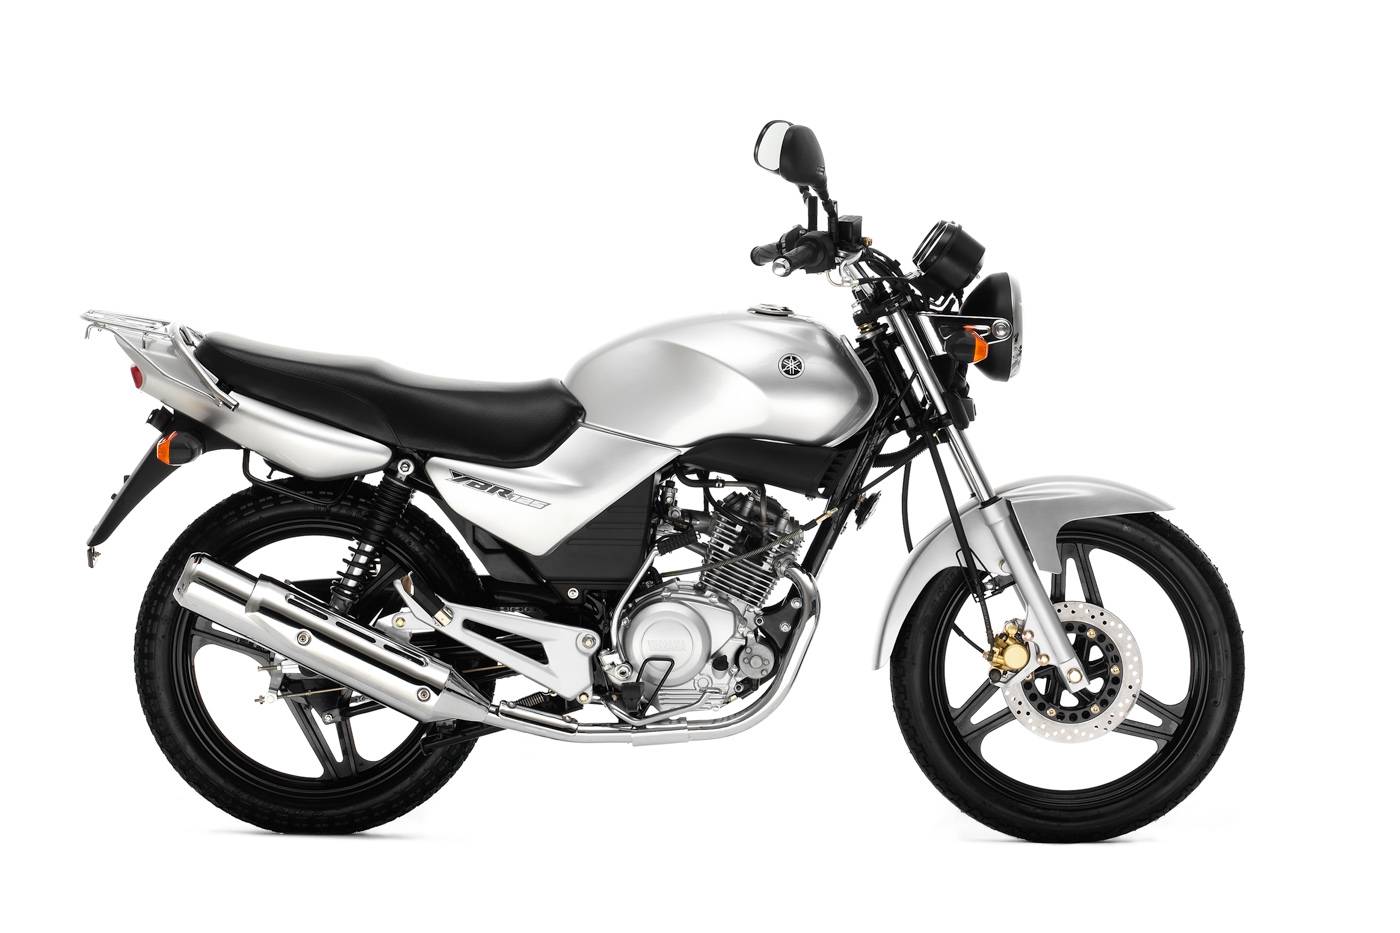 Yamaha ybr 125 великолепно подходит для начинающих мотоциклистов